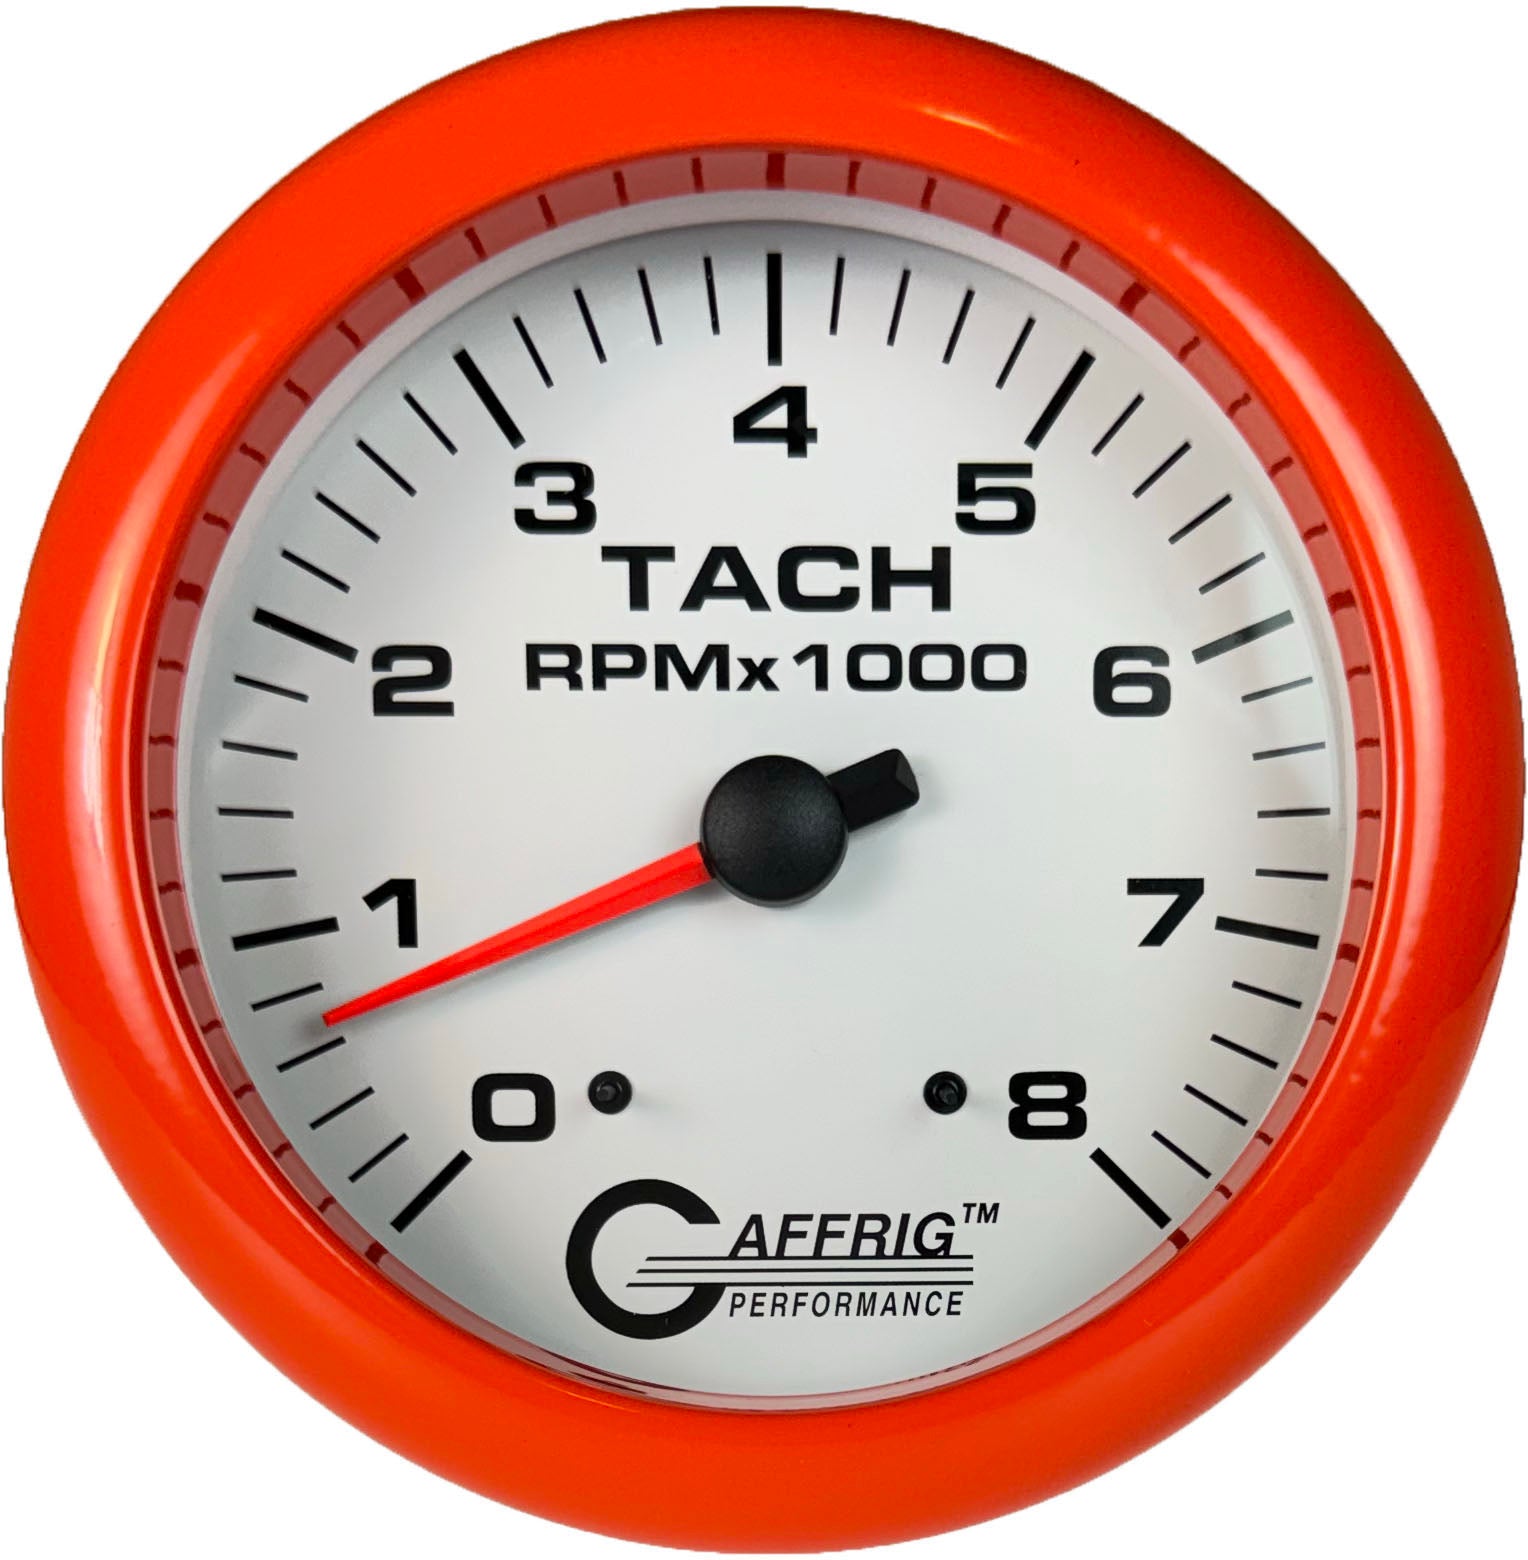 GAFFRIG PART #10019 4 5/8 INCH ELECTRIC TACHOMETER GAUGE 0-8000 RPM WHITE ORANGE